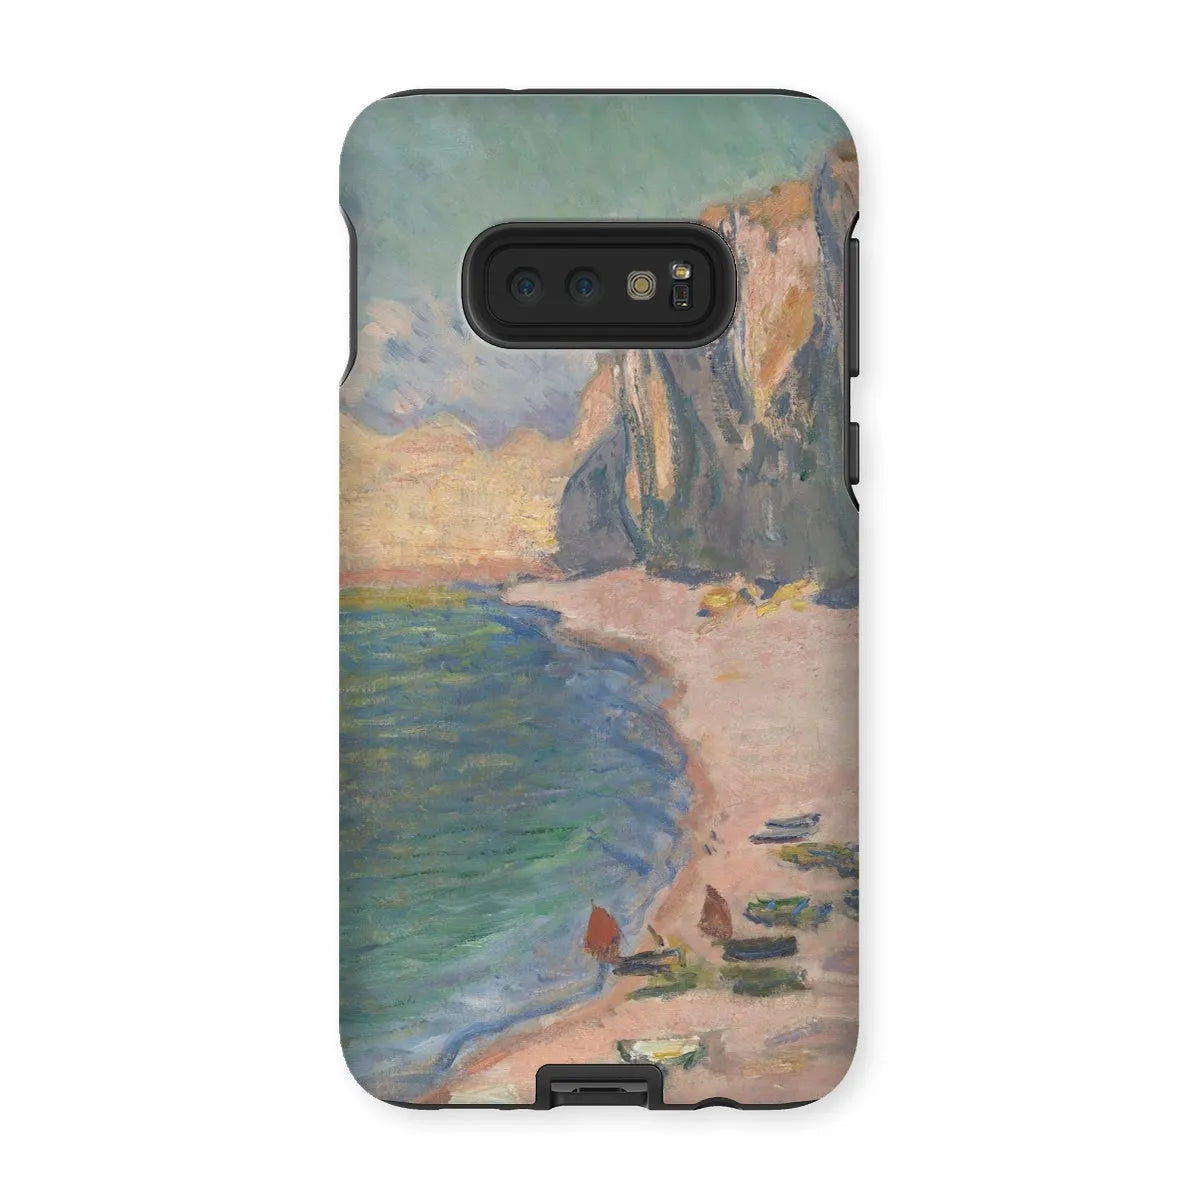 étretat - Impressionist Art Phone Case - Claude Monet - Samsung Galaxy S10e / Matte - Mobile Phone Cases - Aesthetic Art